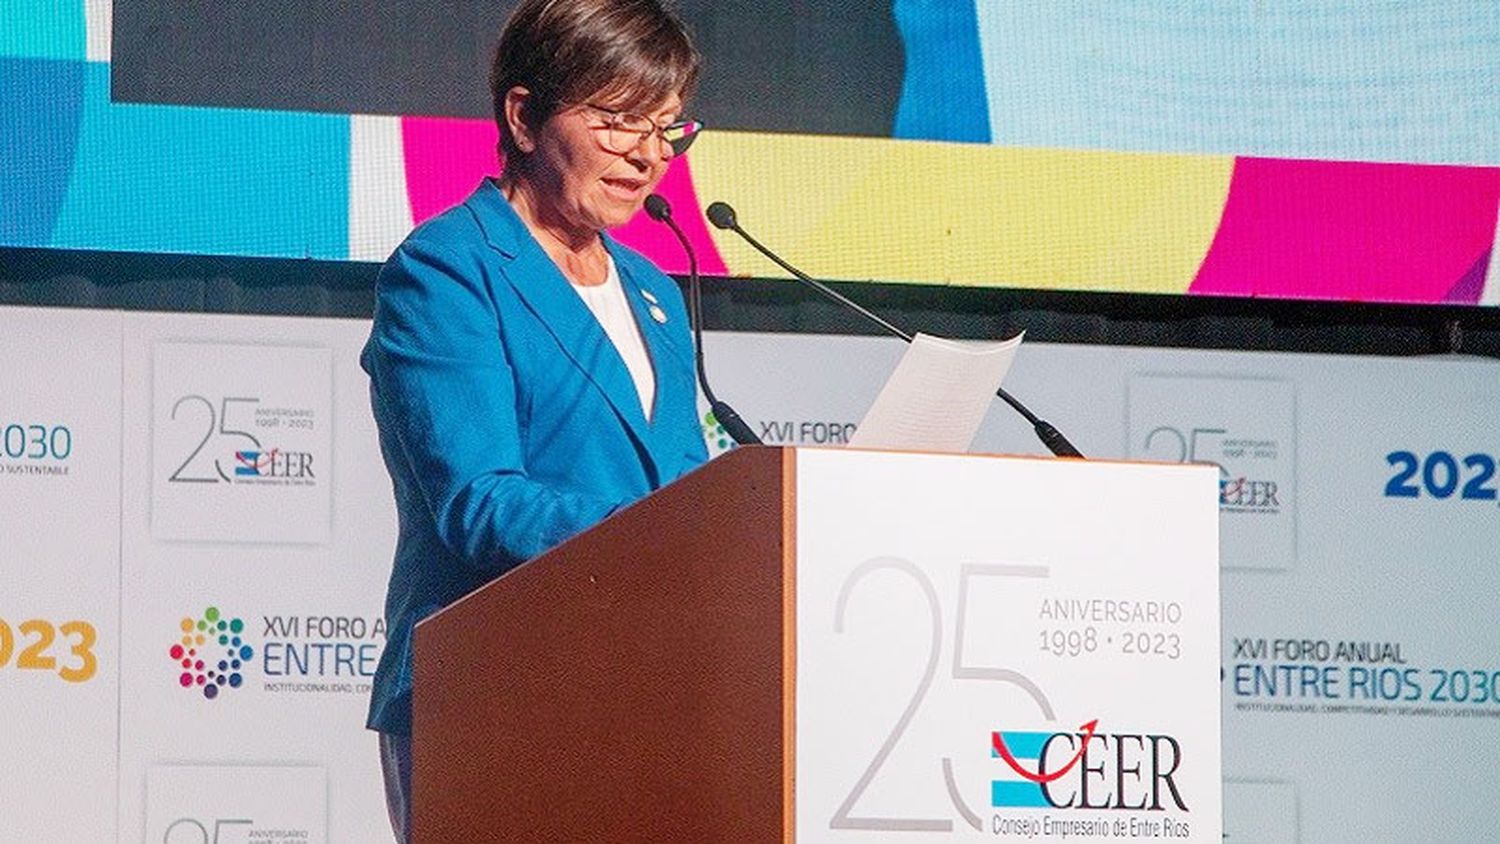 En su XVI foro anual, el CEER celebró 25 años de vida institucional